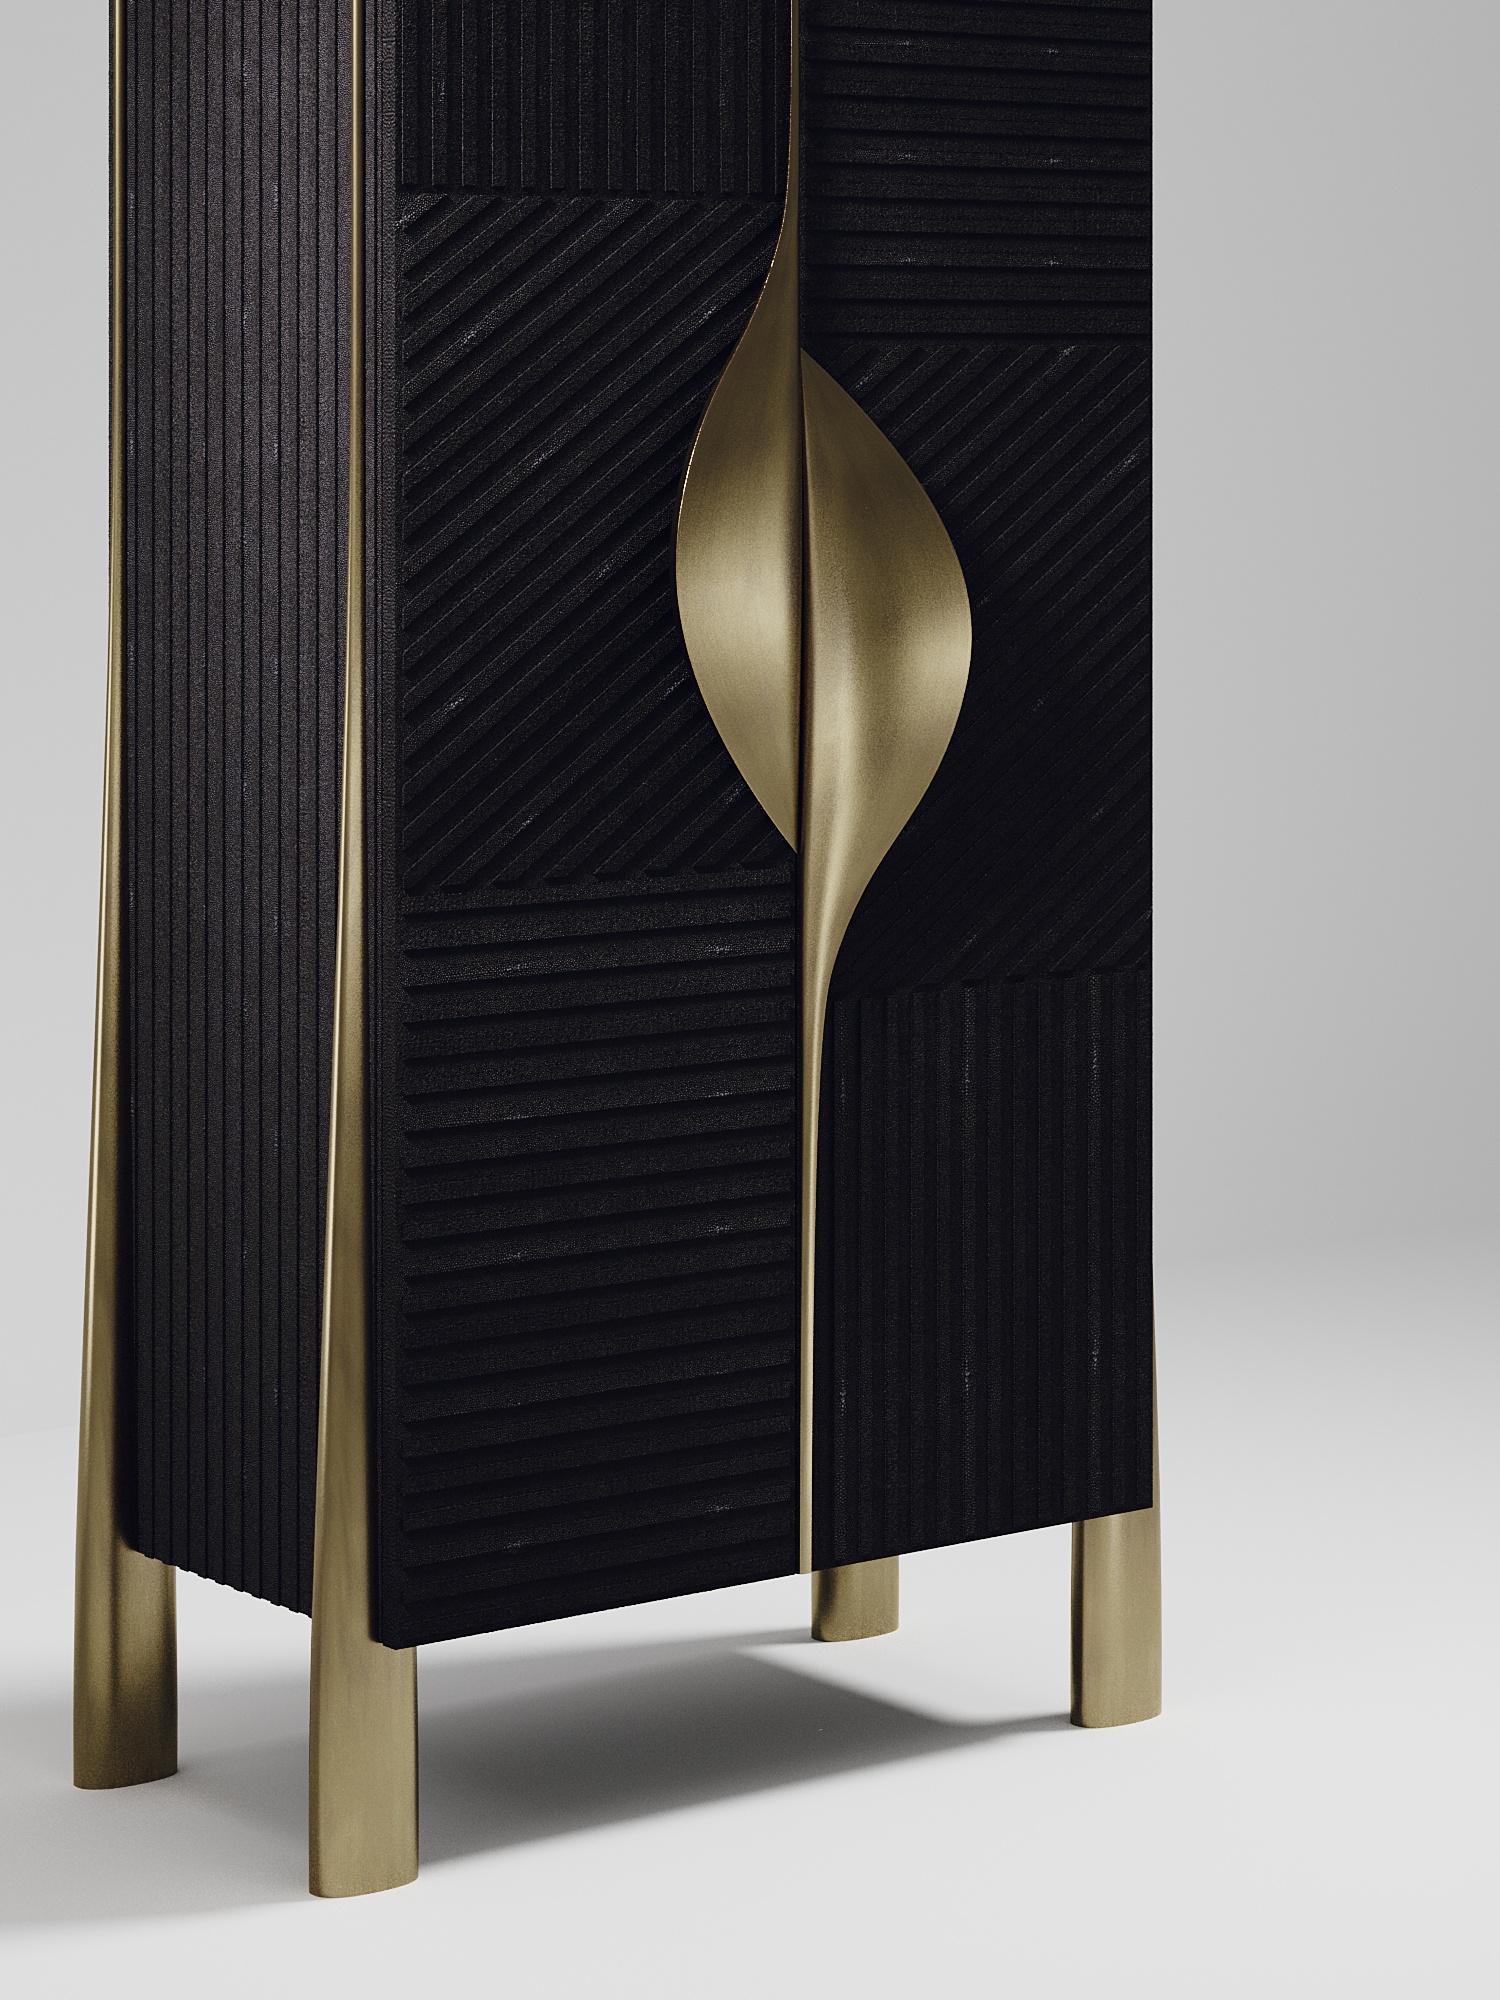 Le meuble bar wave de R&Y Augousti est une pièce unique. L'ensemble de la pièce est incrusté de galuchat noir, l'extérieur étant sculpté à la main dans une version actualisée du motif 